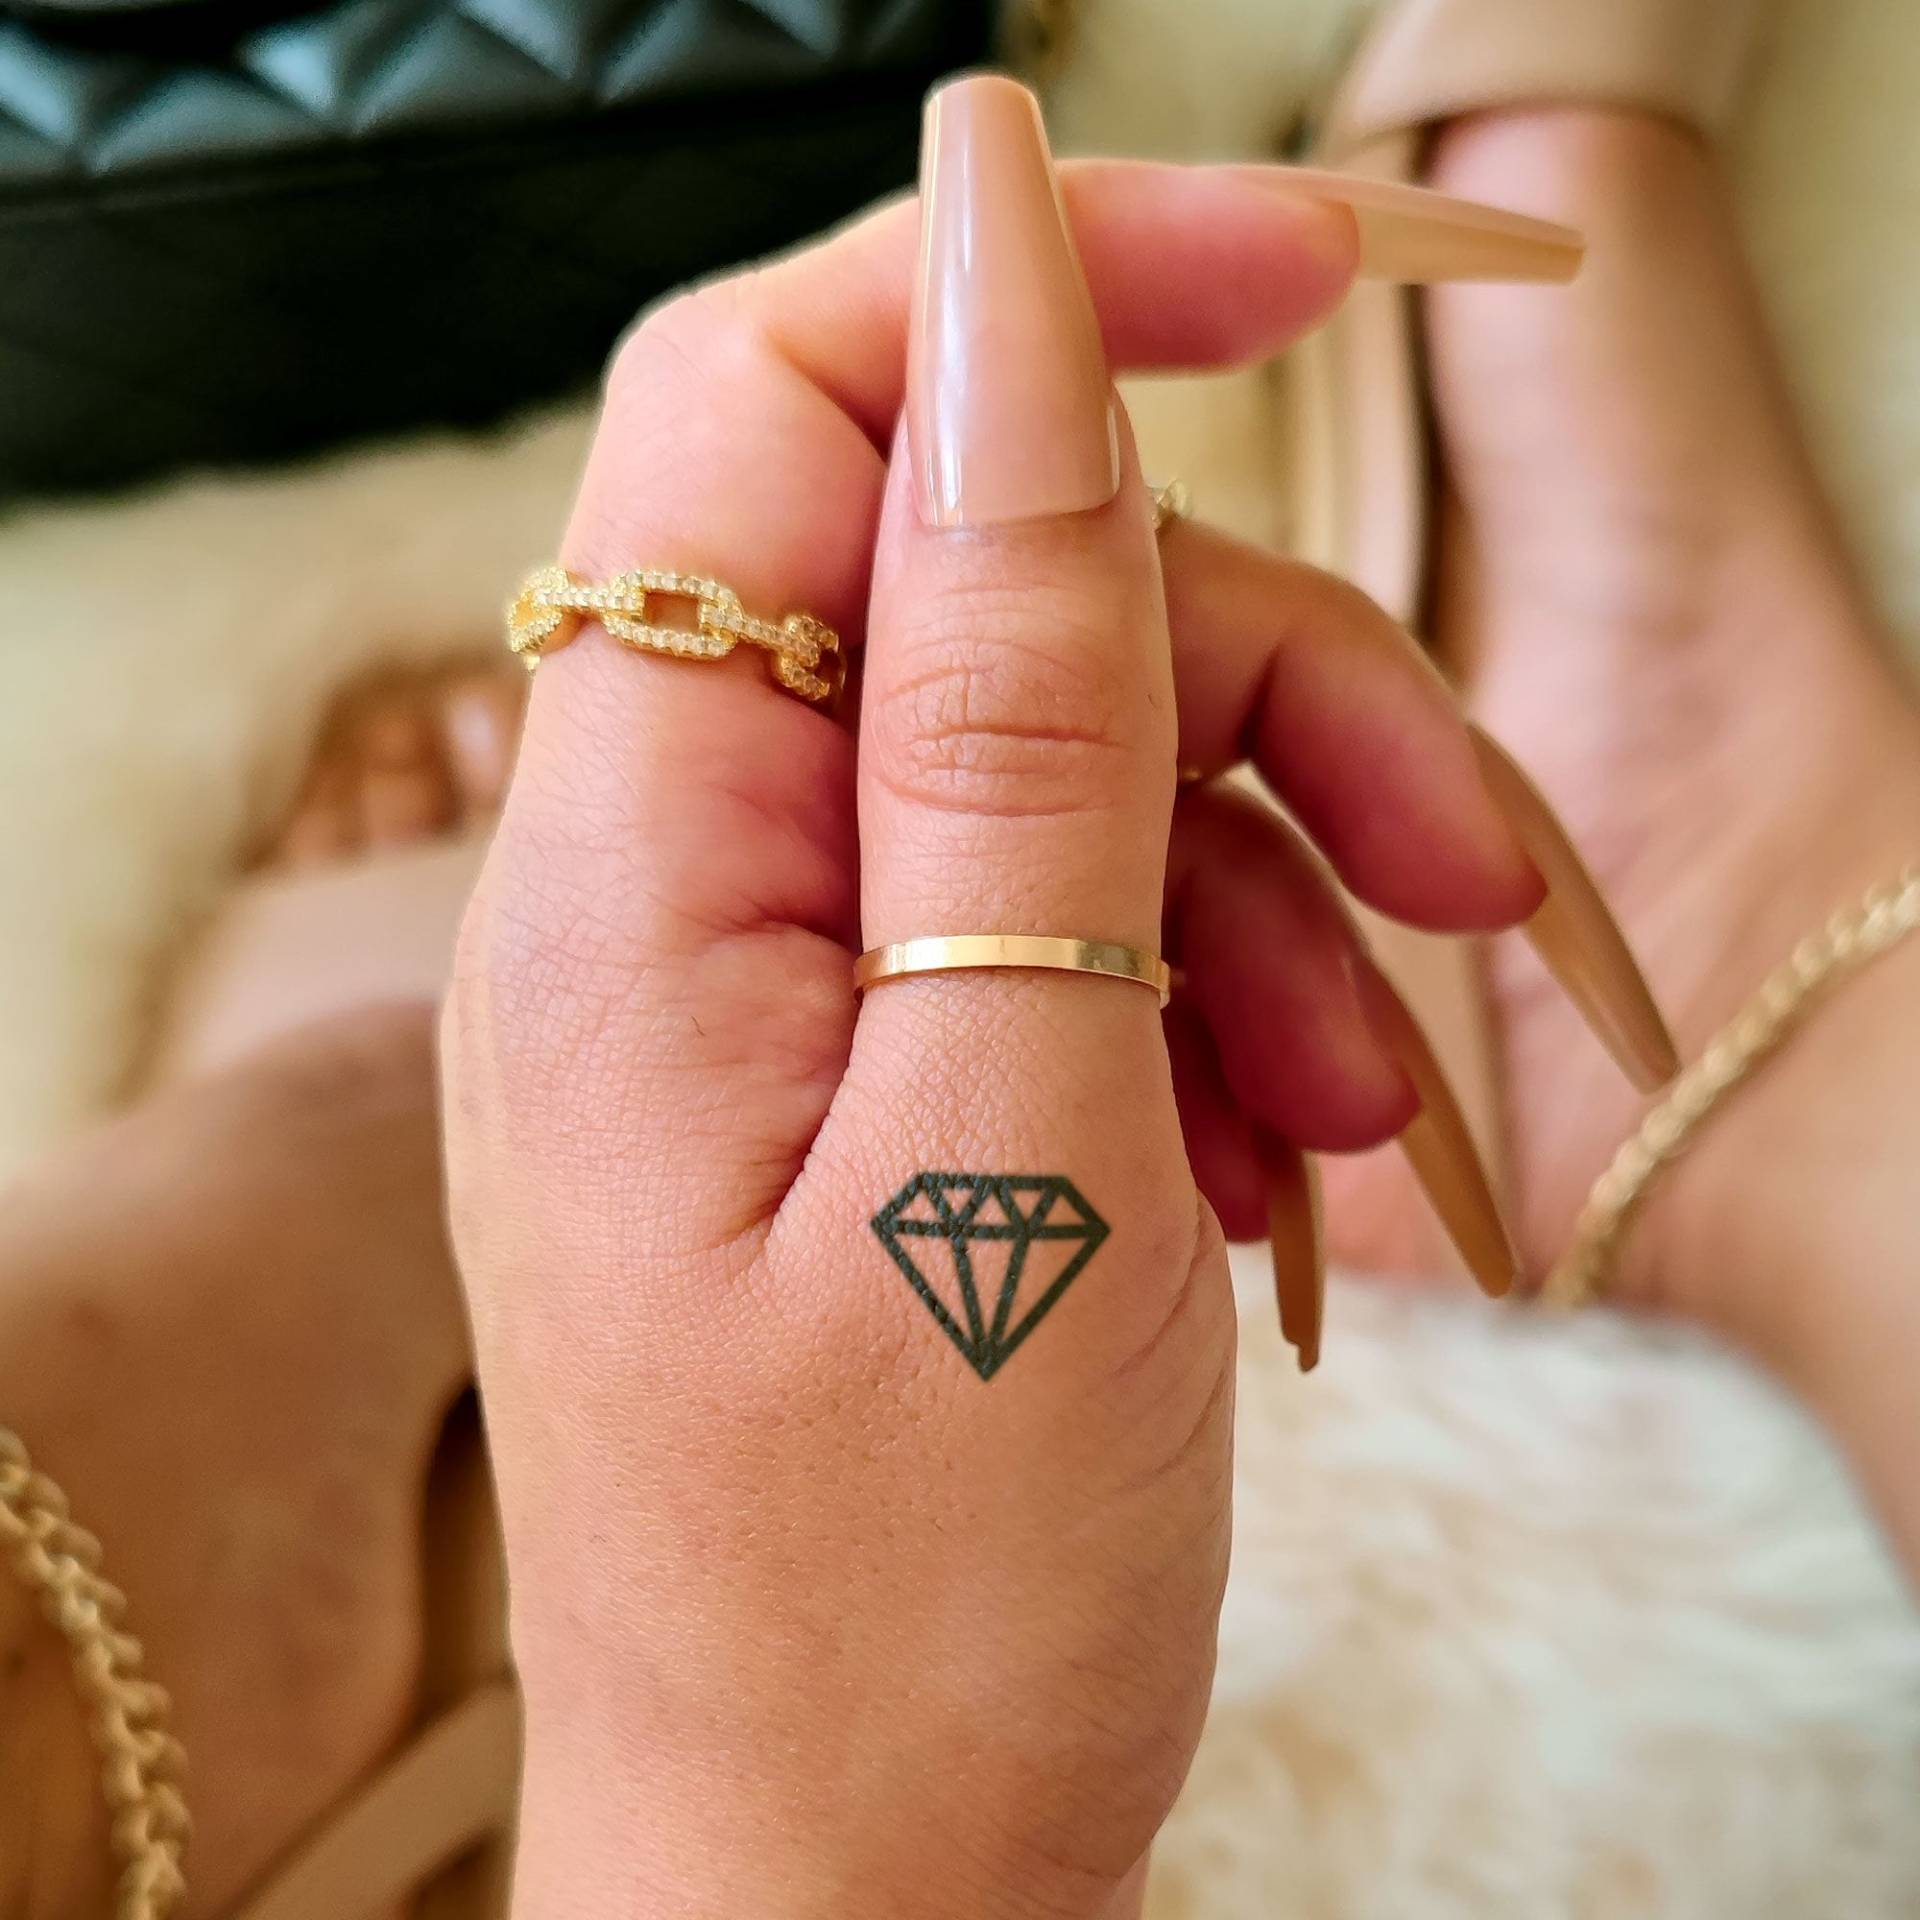 Winziger Diamant X 2 | Semi-Permanent Tattoo Wasserfester Wochen Temporäres Geschenkidee Jagua Henna Tatouage Temporaire von Etsy - NotaTattoo